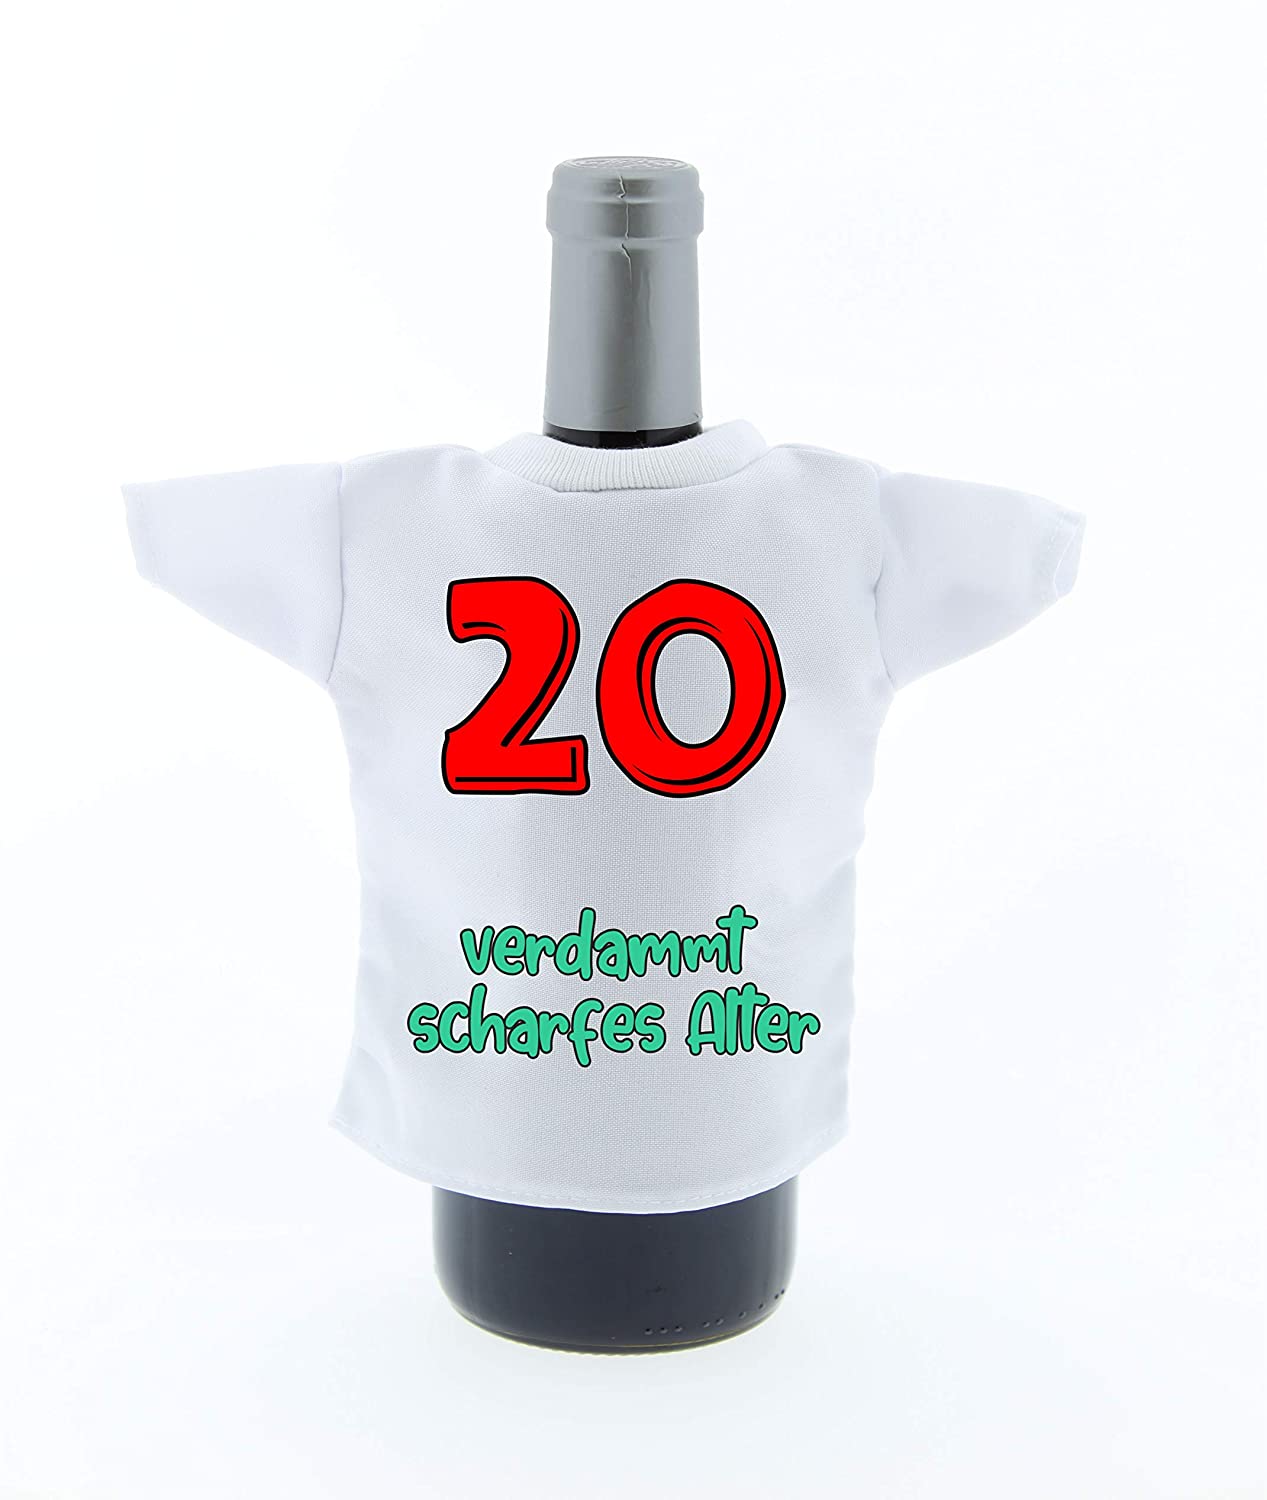 Flaschen Shirt Deko Mini Tshirt zum Geburtstag mit Aufdruck  20 verdammt scharfes Alter